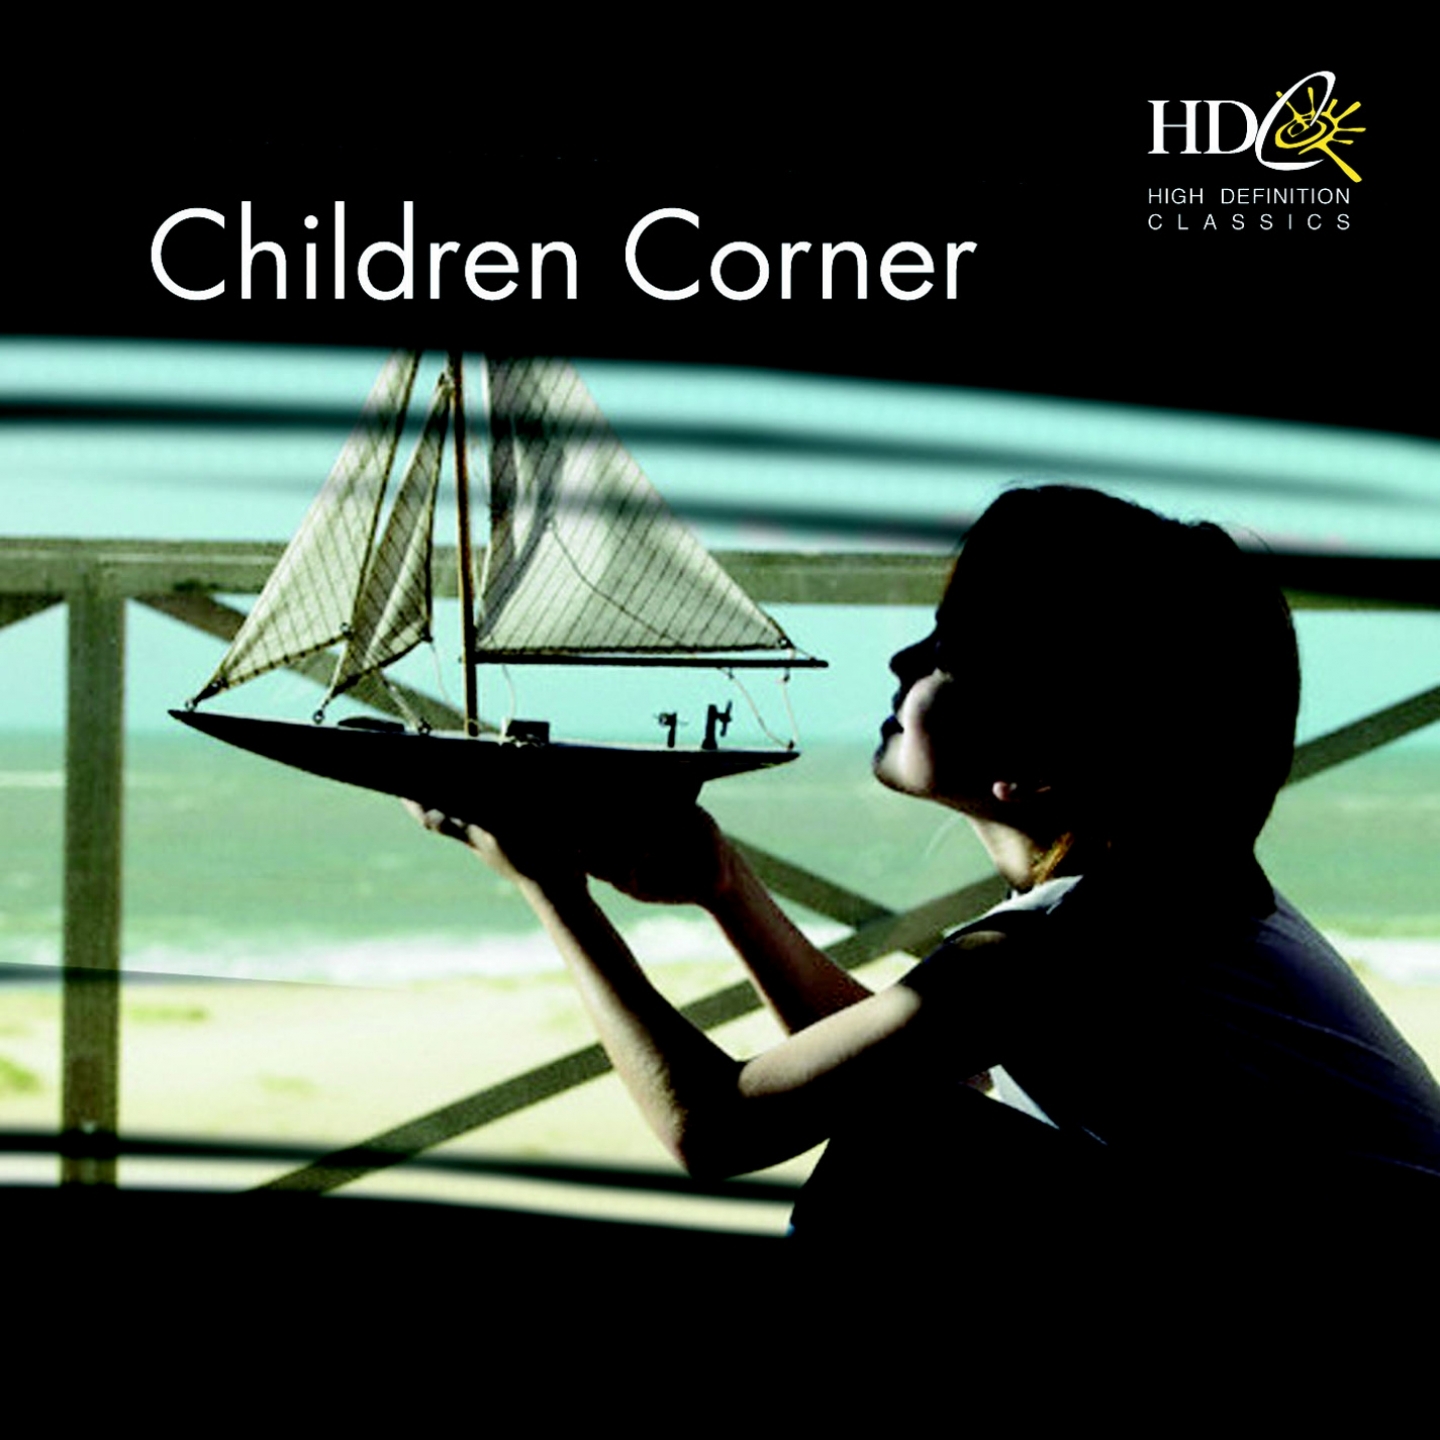 Children's Corner : V. The Little Shepherd